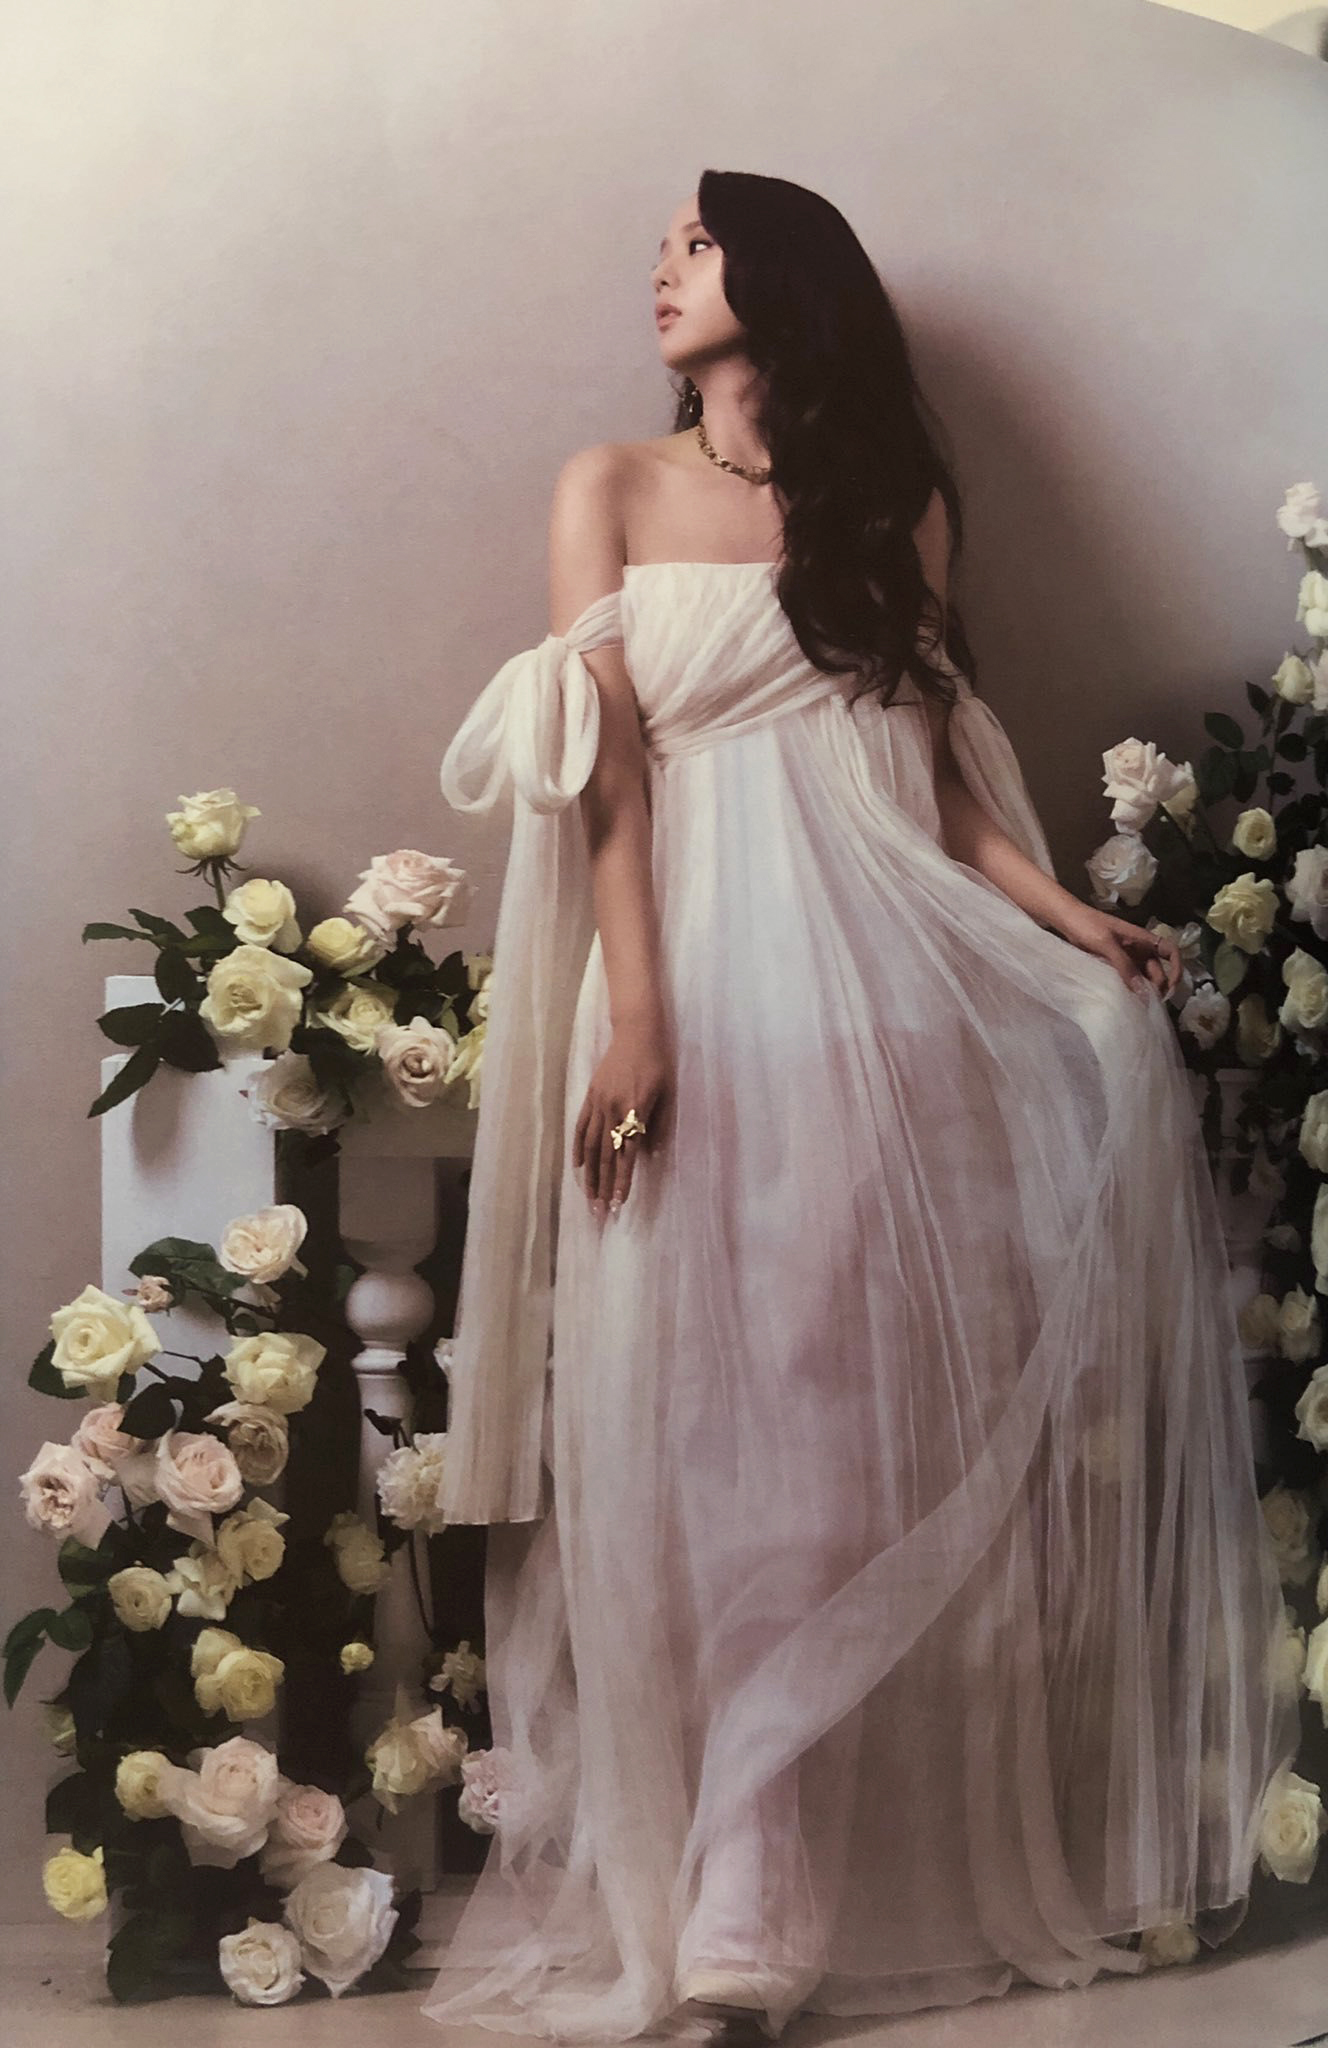 Chiếc váy màu trắng kết hợp với backgroup ngập tràn hoa hồng tạo vẻ tinh khôi, yêu kiều cho chị cả BLACKPINK.